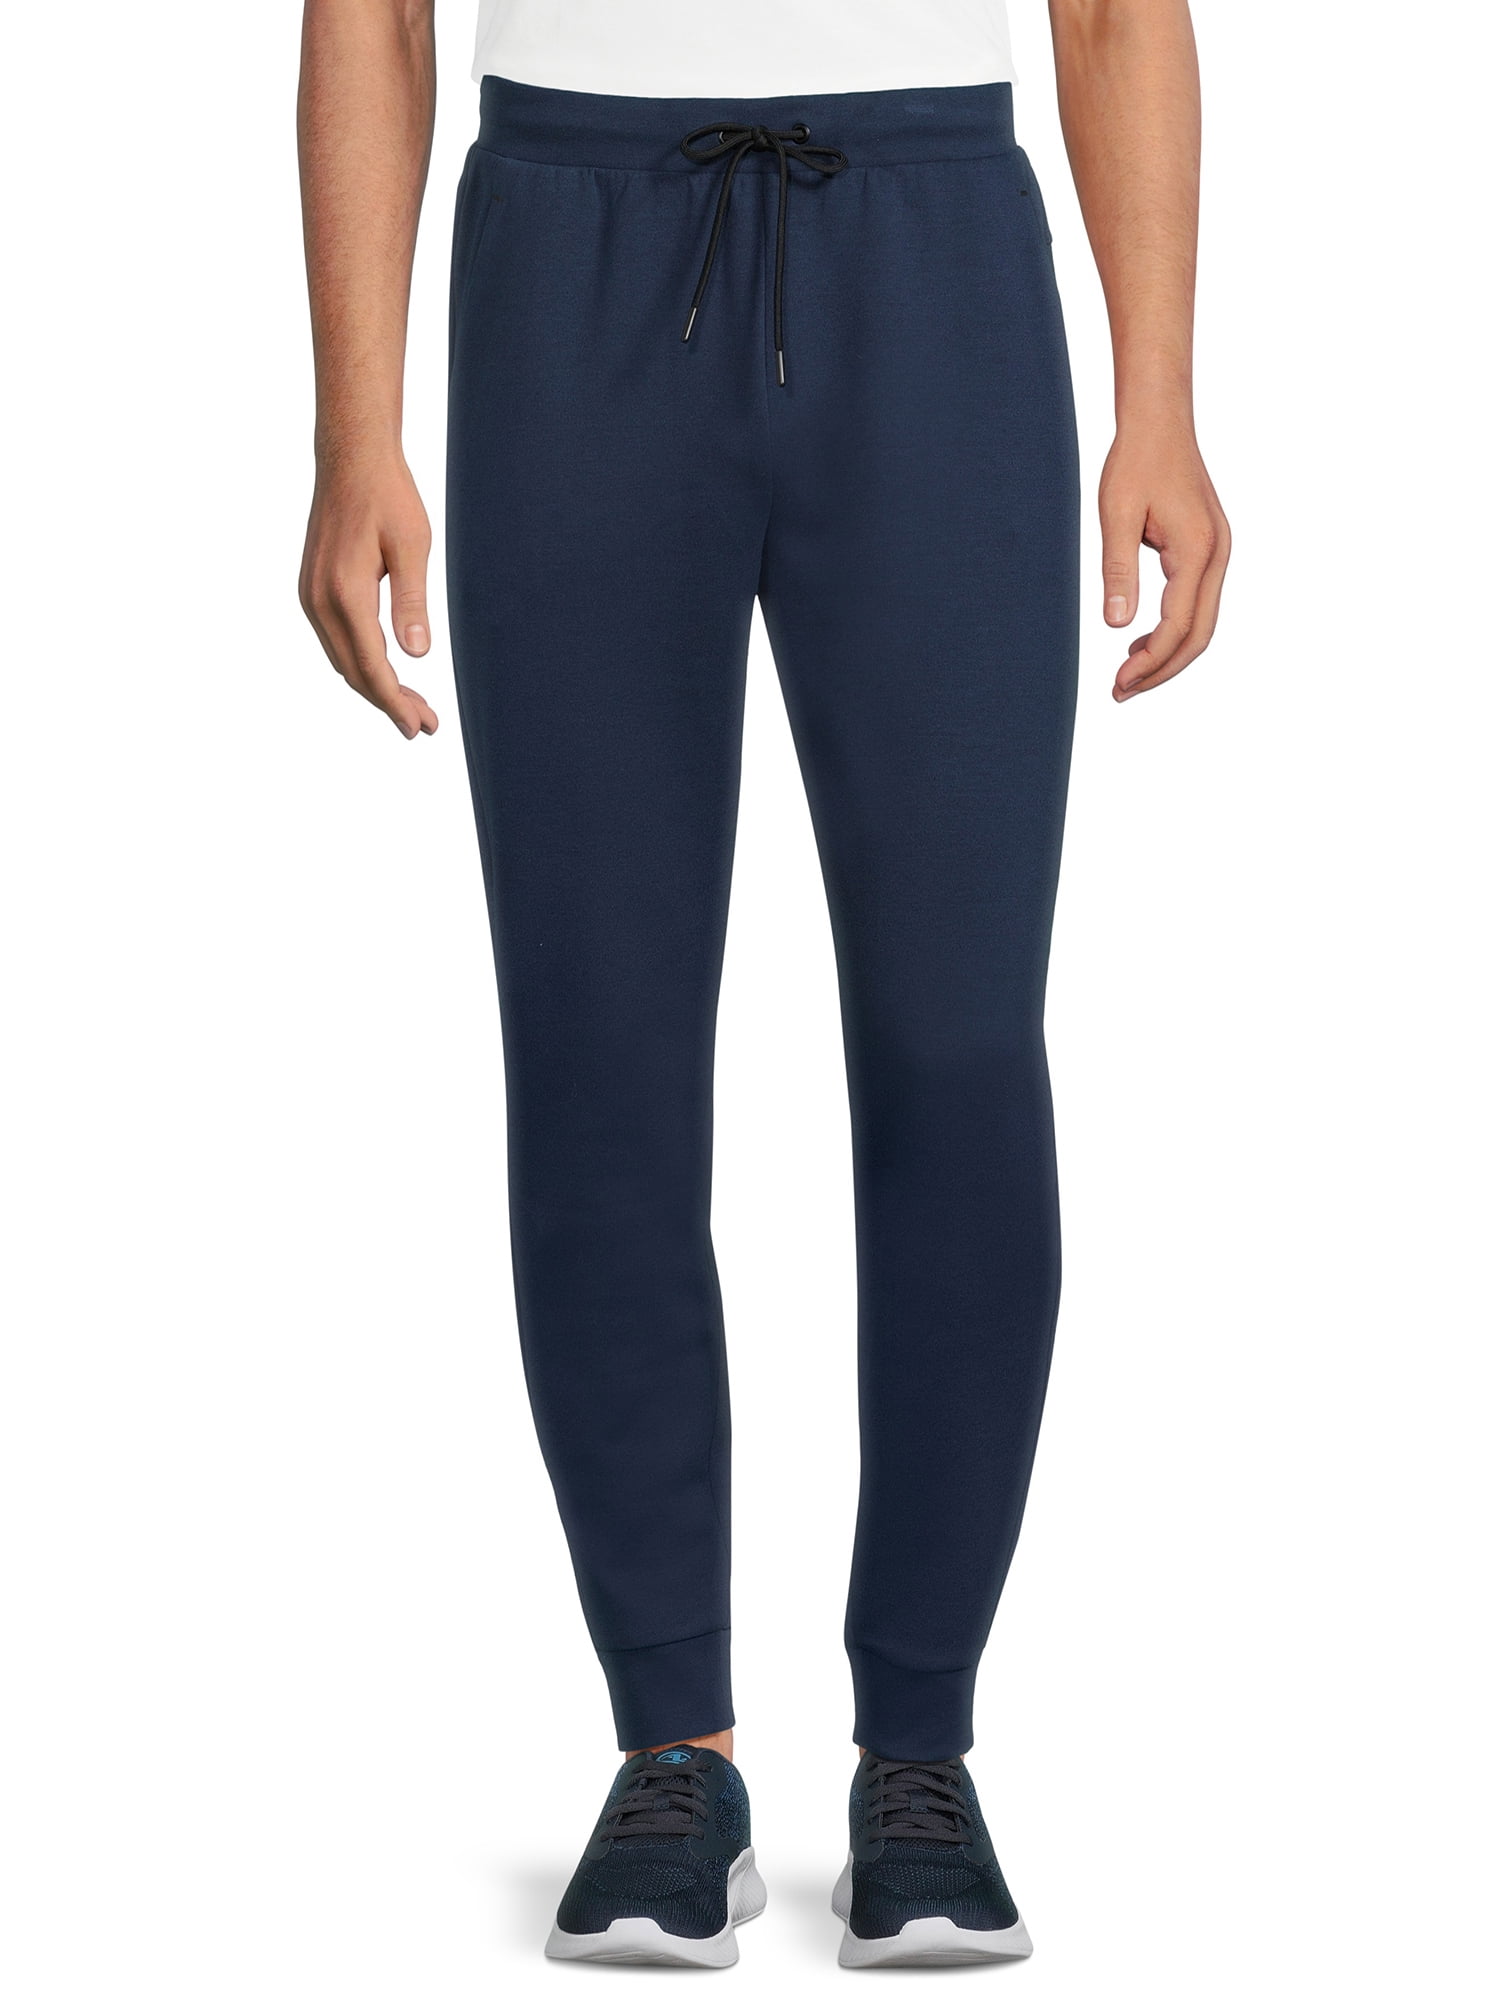 Athletic Works Men's Fusion Knit Jogger Pants, Sizes S-3XL - Walmart.com